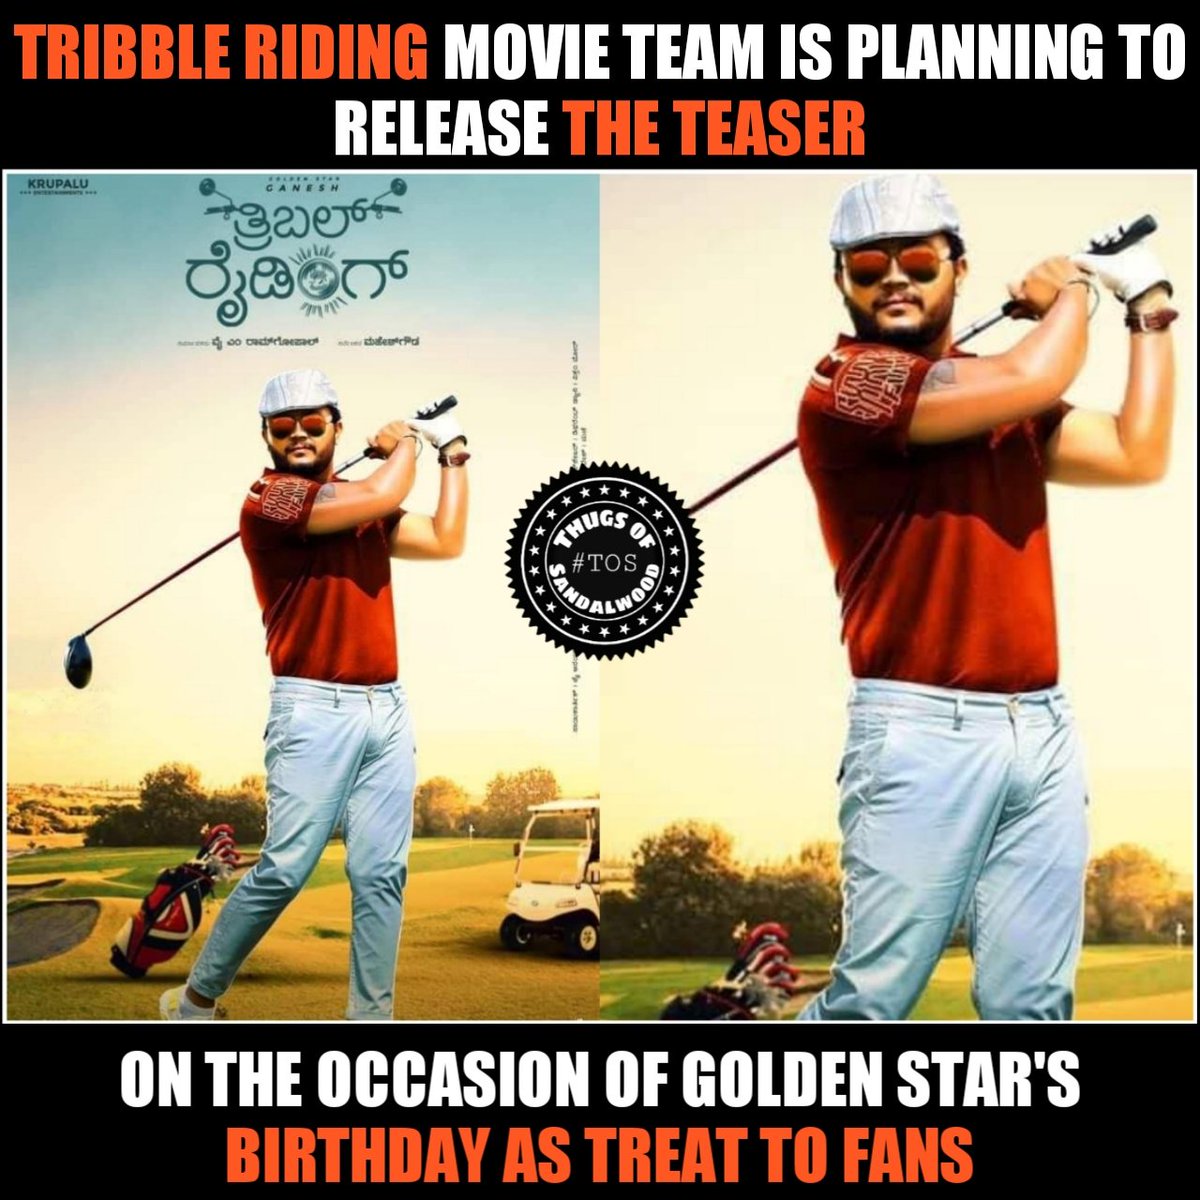 #TribbleRiding Teaser on July 2nd🤘
#Ganesh #GoldenStar @Official_Ganesh